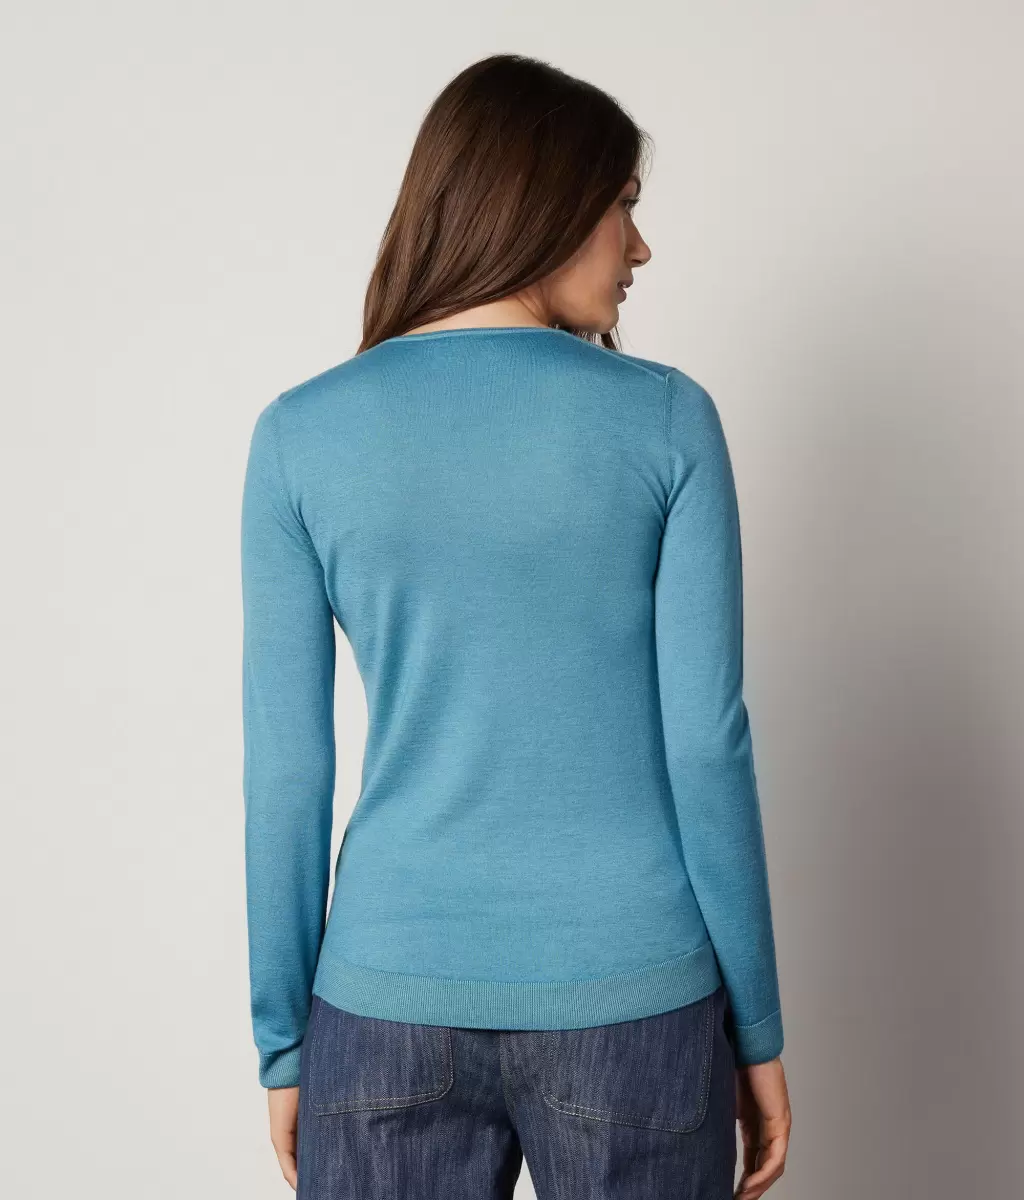 Swetry Z Okrągłym Dekoltem Blue Kobieta Pulower Z Kaszmiru Ultrafine Falconeri - 2